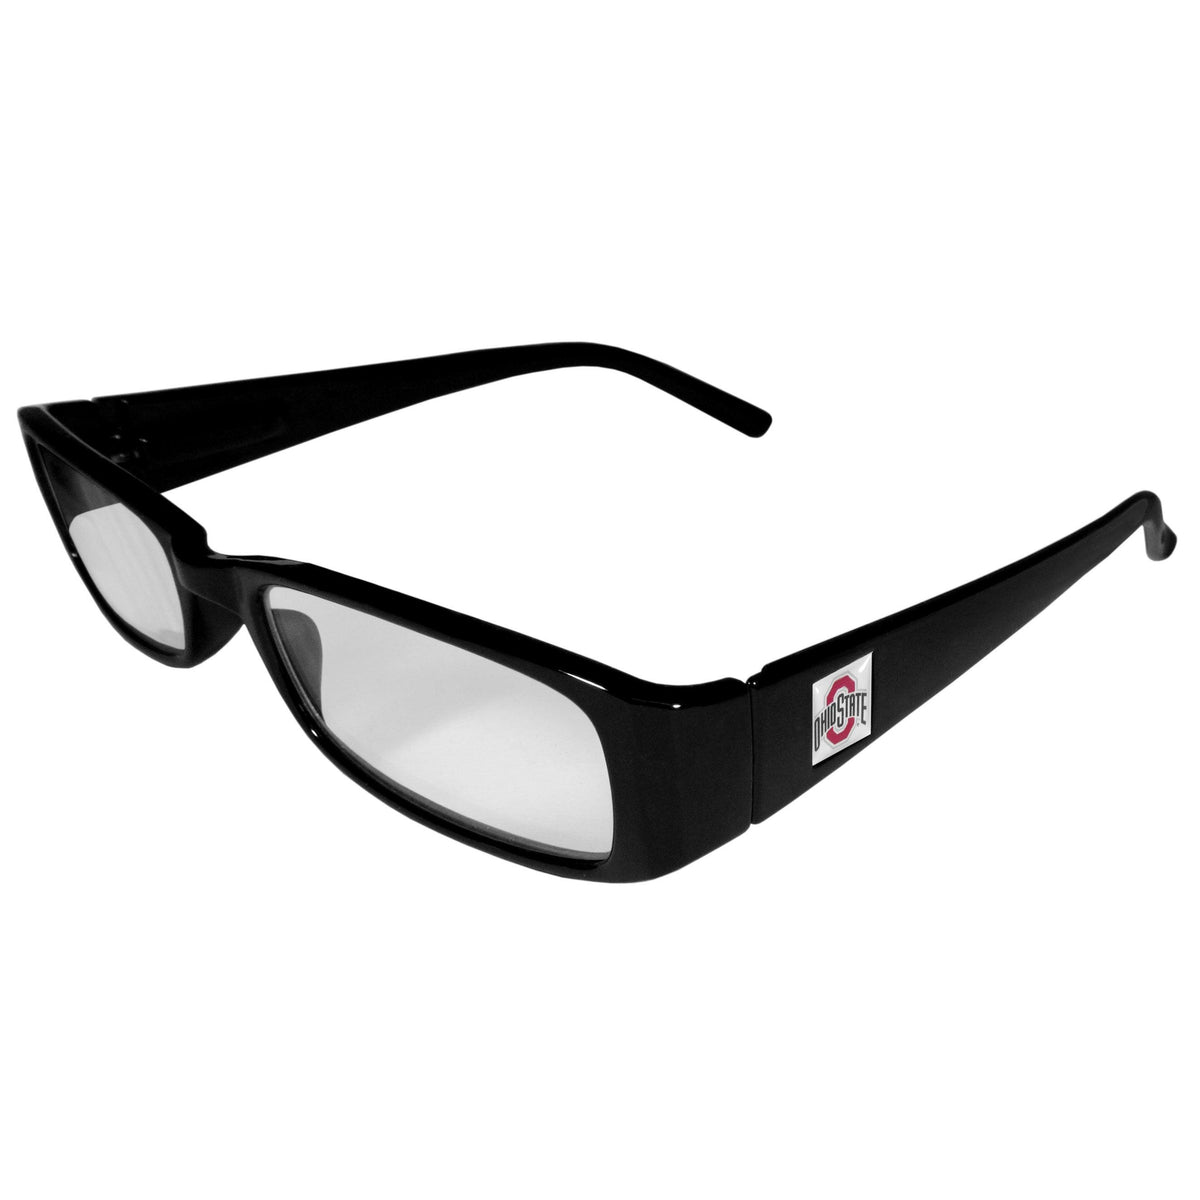 Ohio St. Buckeyes Black Reading Glasses +1.75 - Flyclothing LLC